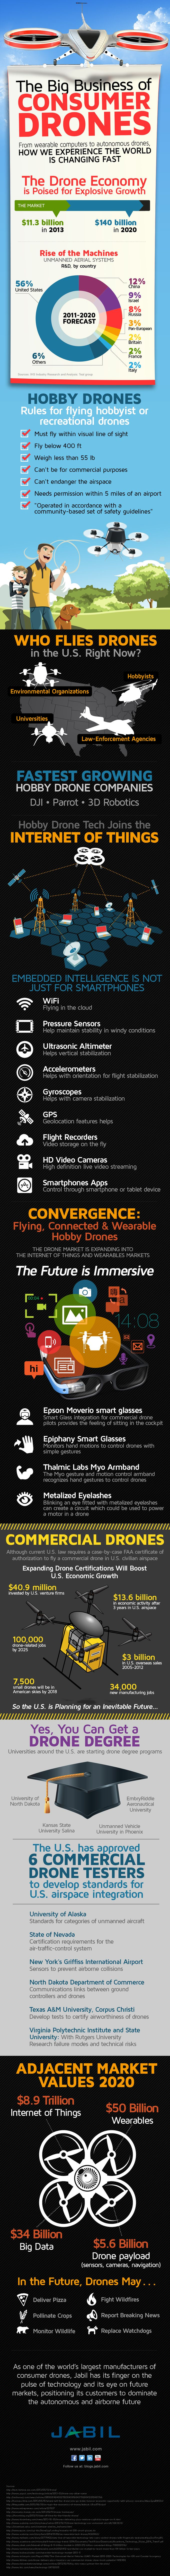 The Drone Consumer Revolution